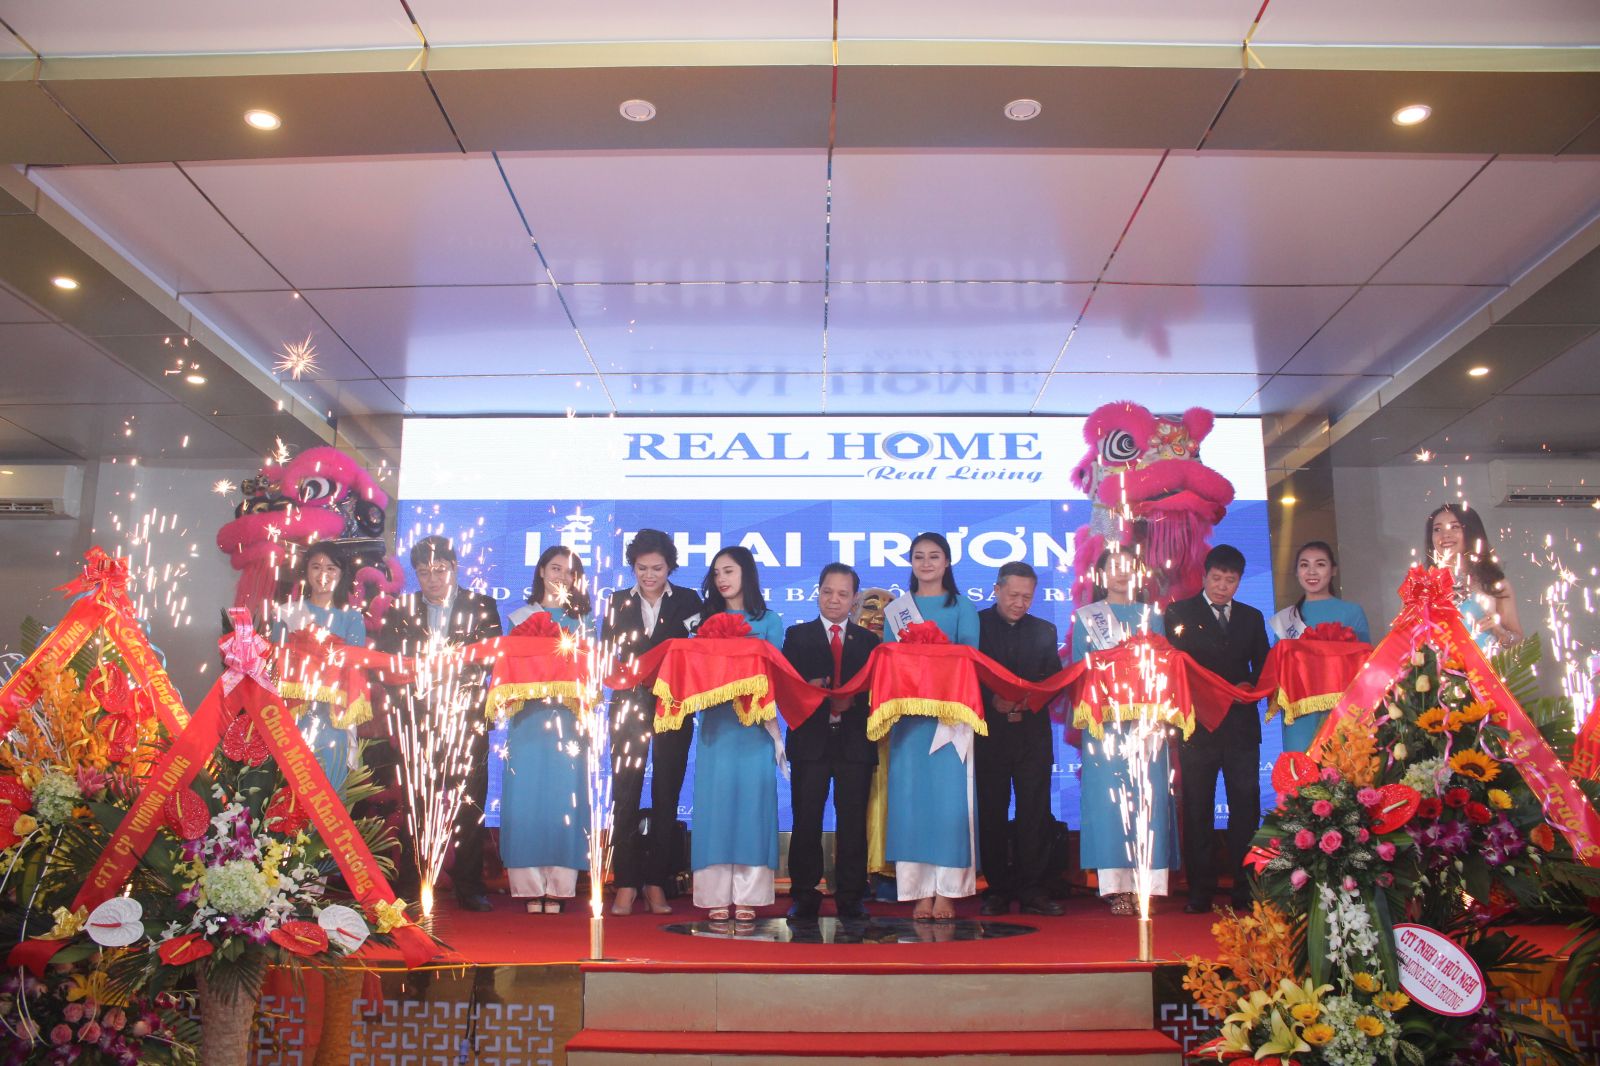 Lễ cắt băng khai trương văn phòng giao dịch Real Home tại Vân Đồn, Quảng Ninh sá ng ngày 9/12/2017